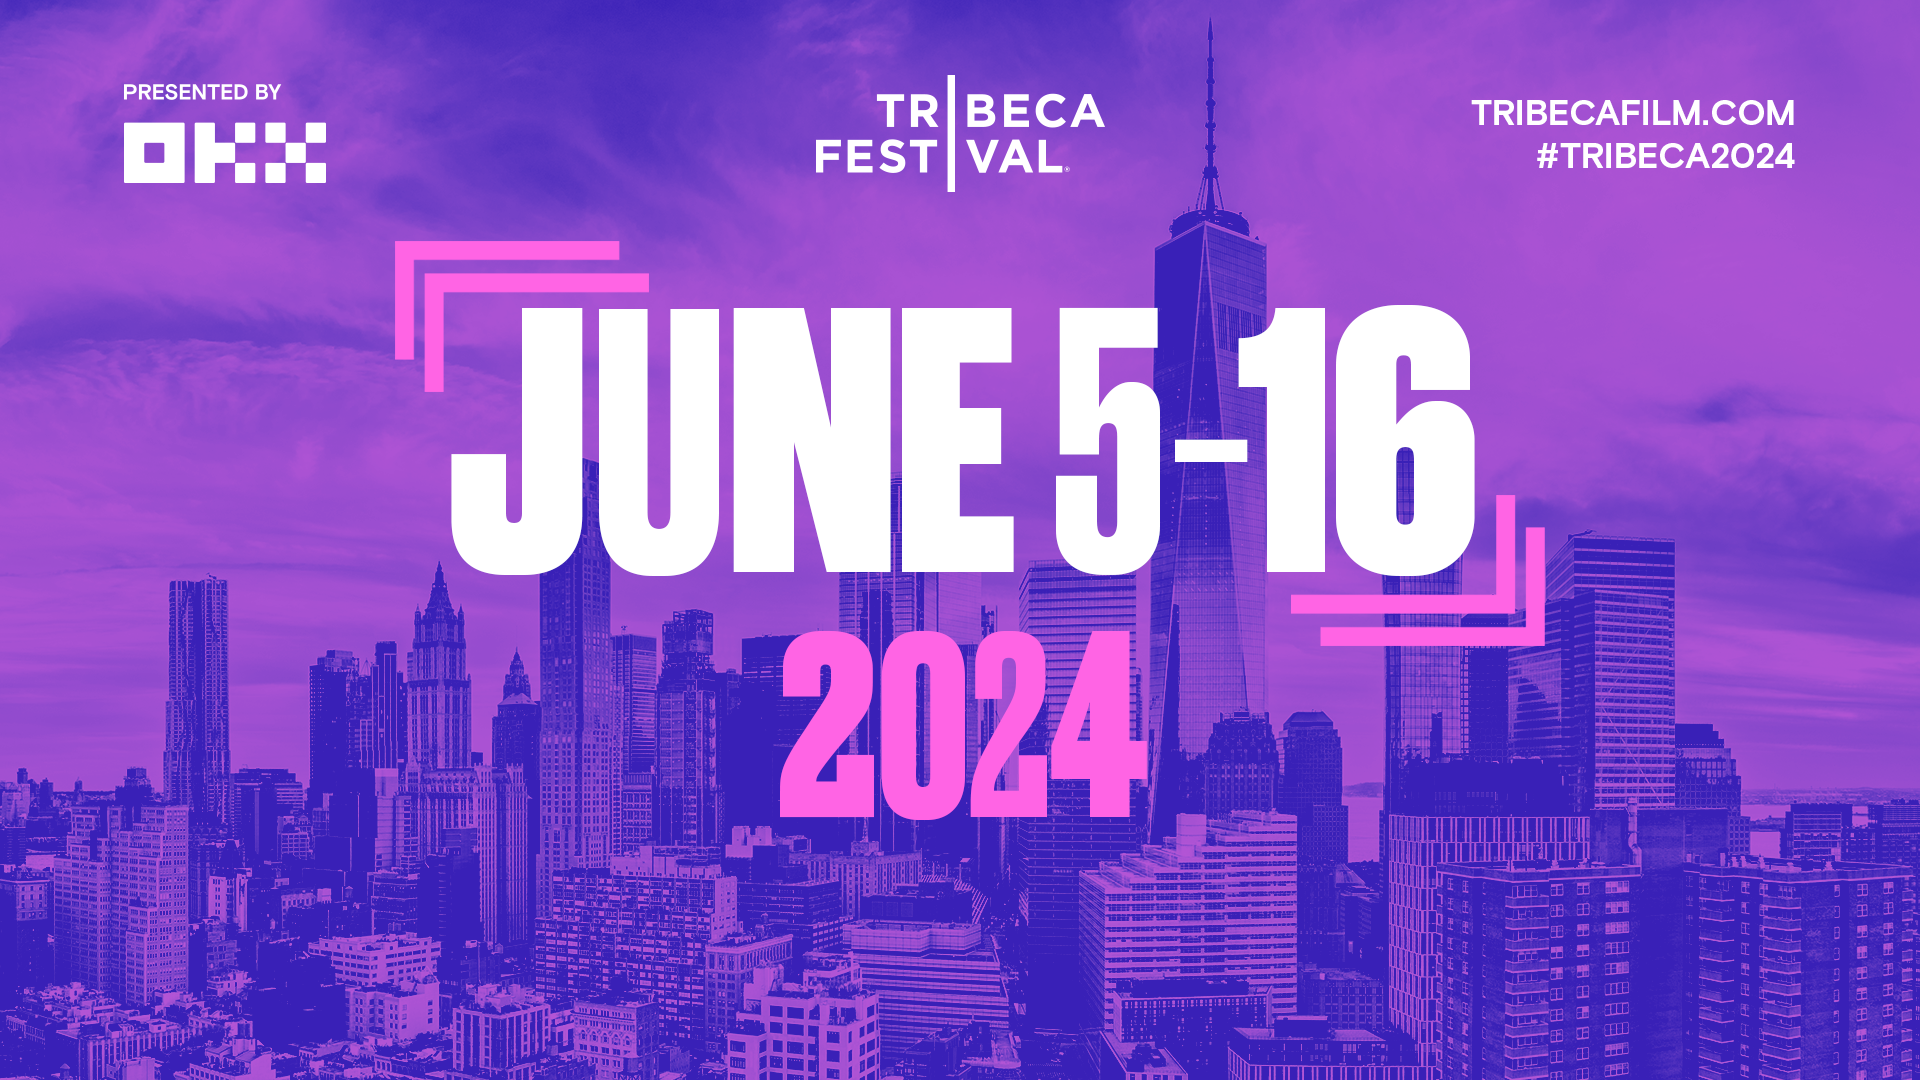 MARK YOUR CALENDARS FOR THE 2024 TRIBECA FESTIVAL! Tribeca